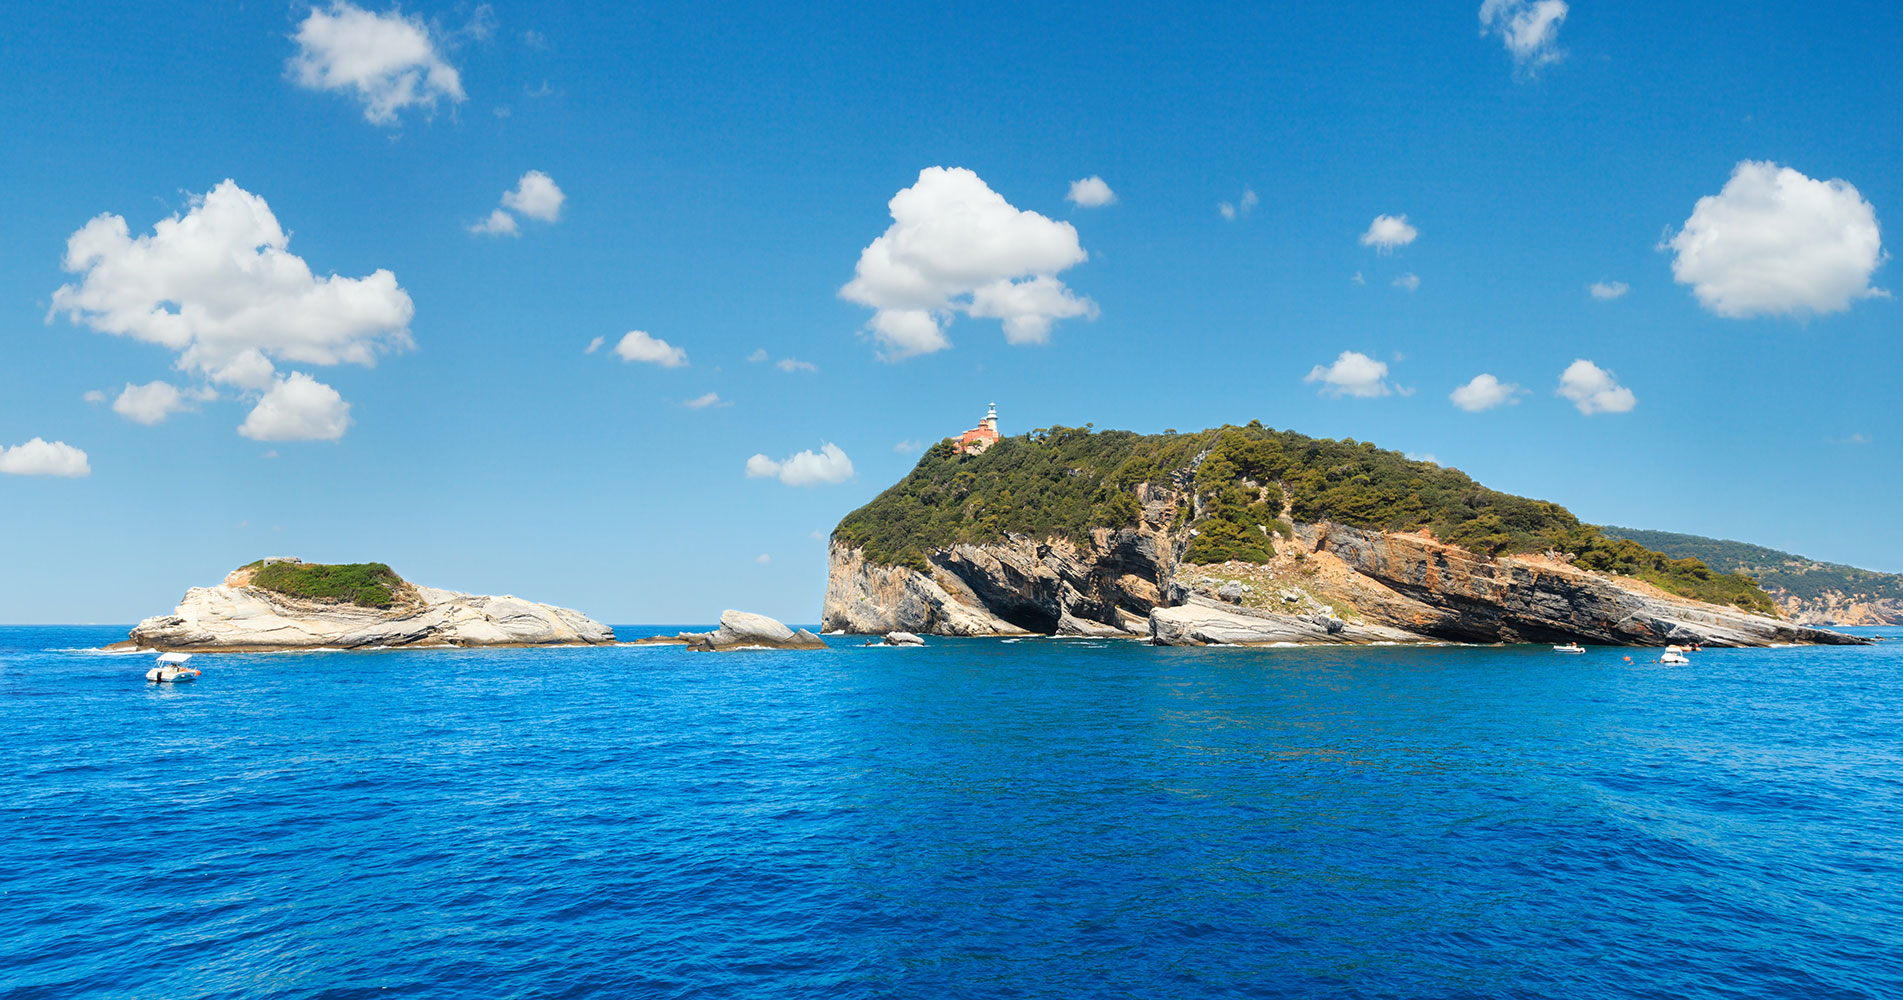 Fotos der beiden Inseln Tino und Tinetto vor der Insel Palmaria